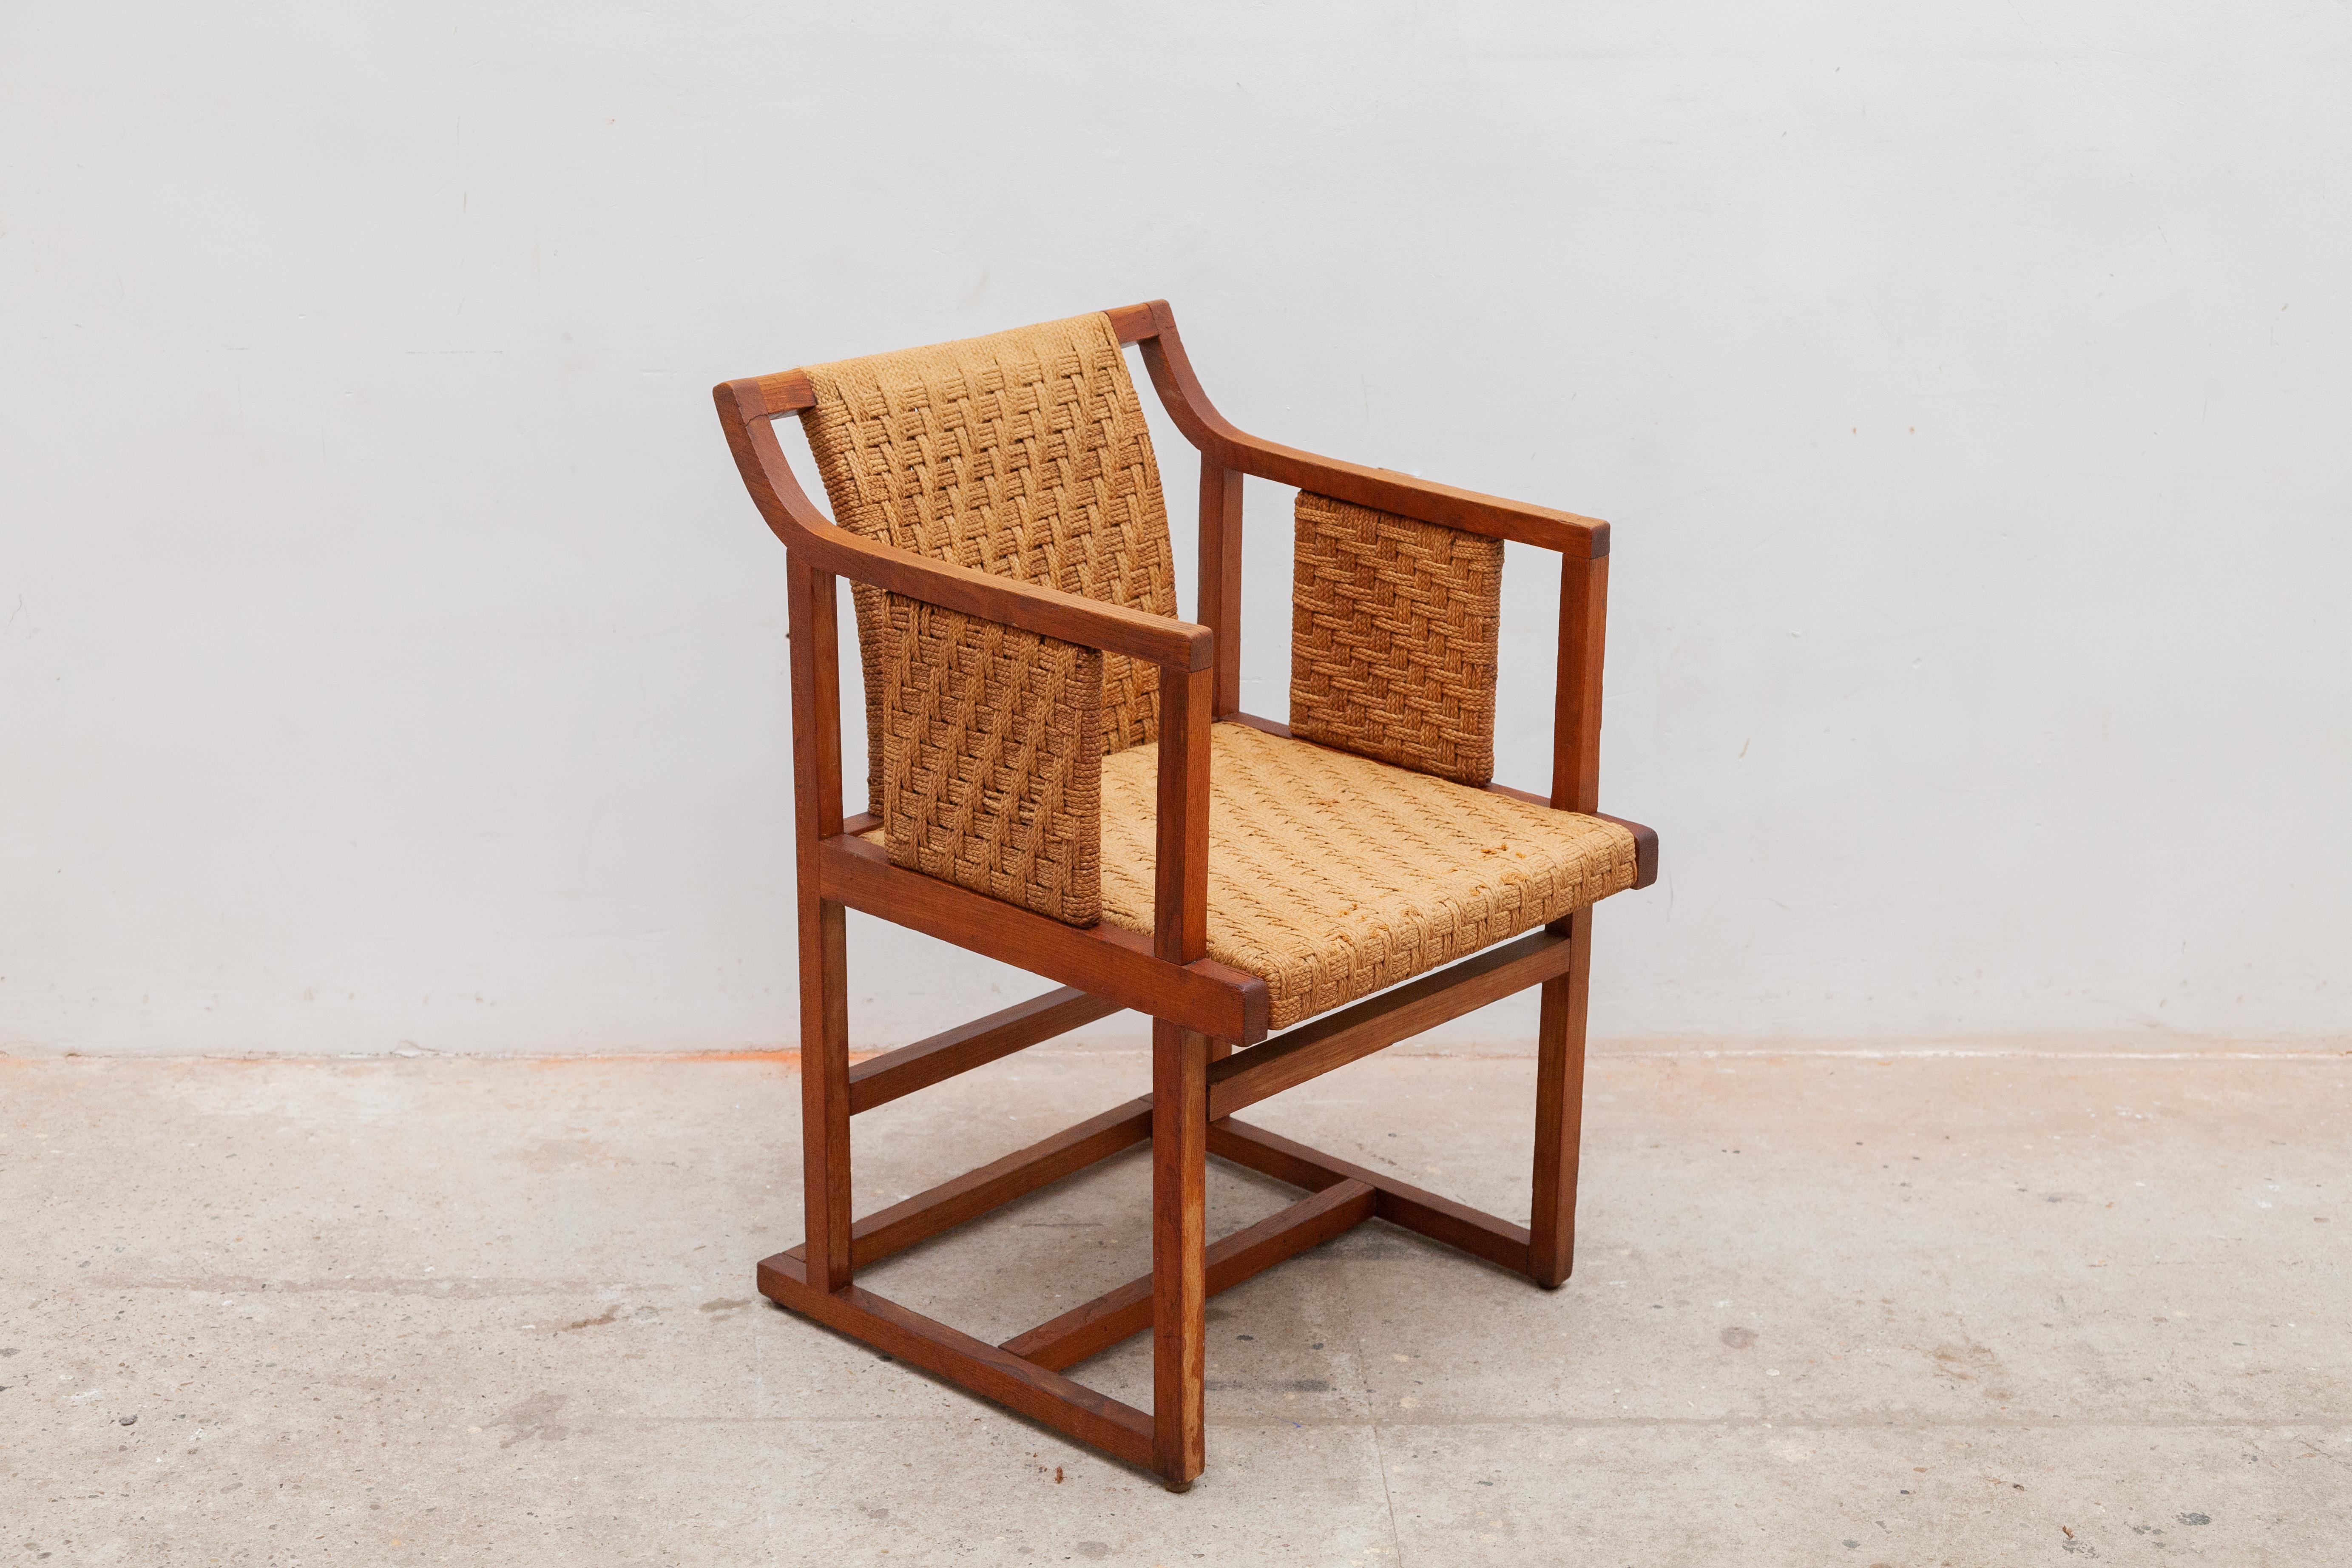 Beistellstuhl des Bauhauses, der dem Designer Erich Dieckmann (1896 - 1944) zugeschrieben wird, hergestellt aus einem Massivholzrahmen mit Sitzfläche und Rückenlehne aus Papierkordelgeflecht, in sehr gutem Originalzustand.

 